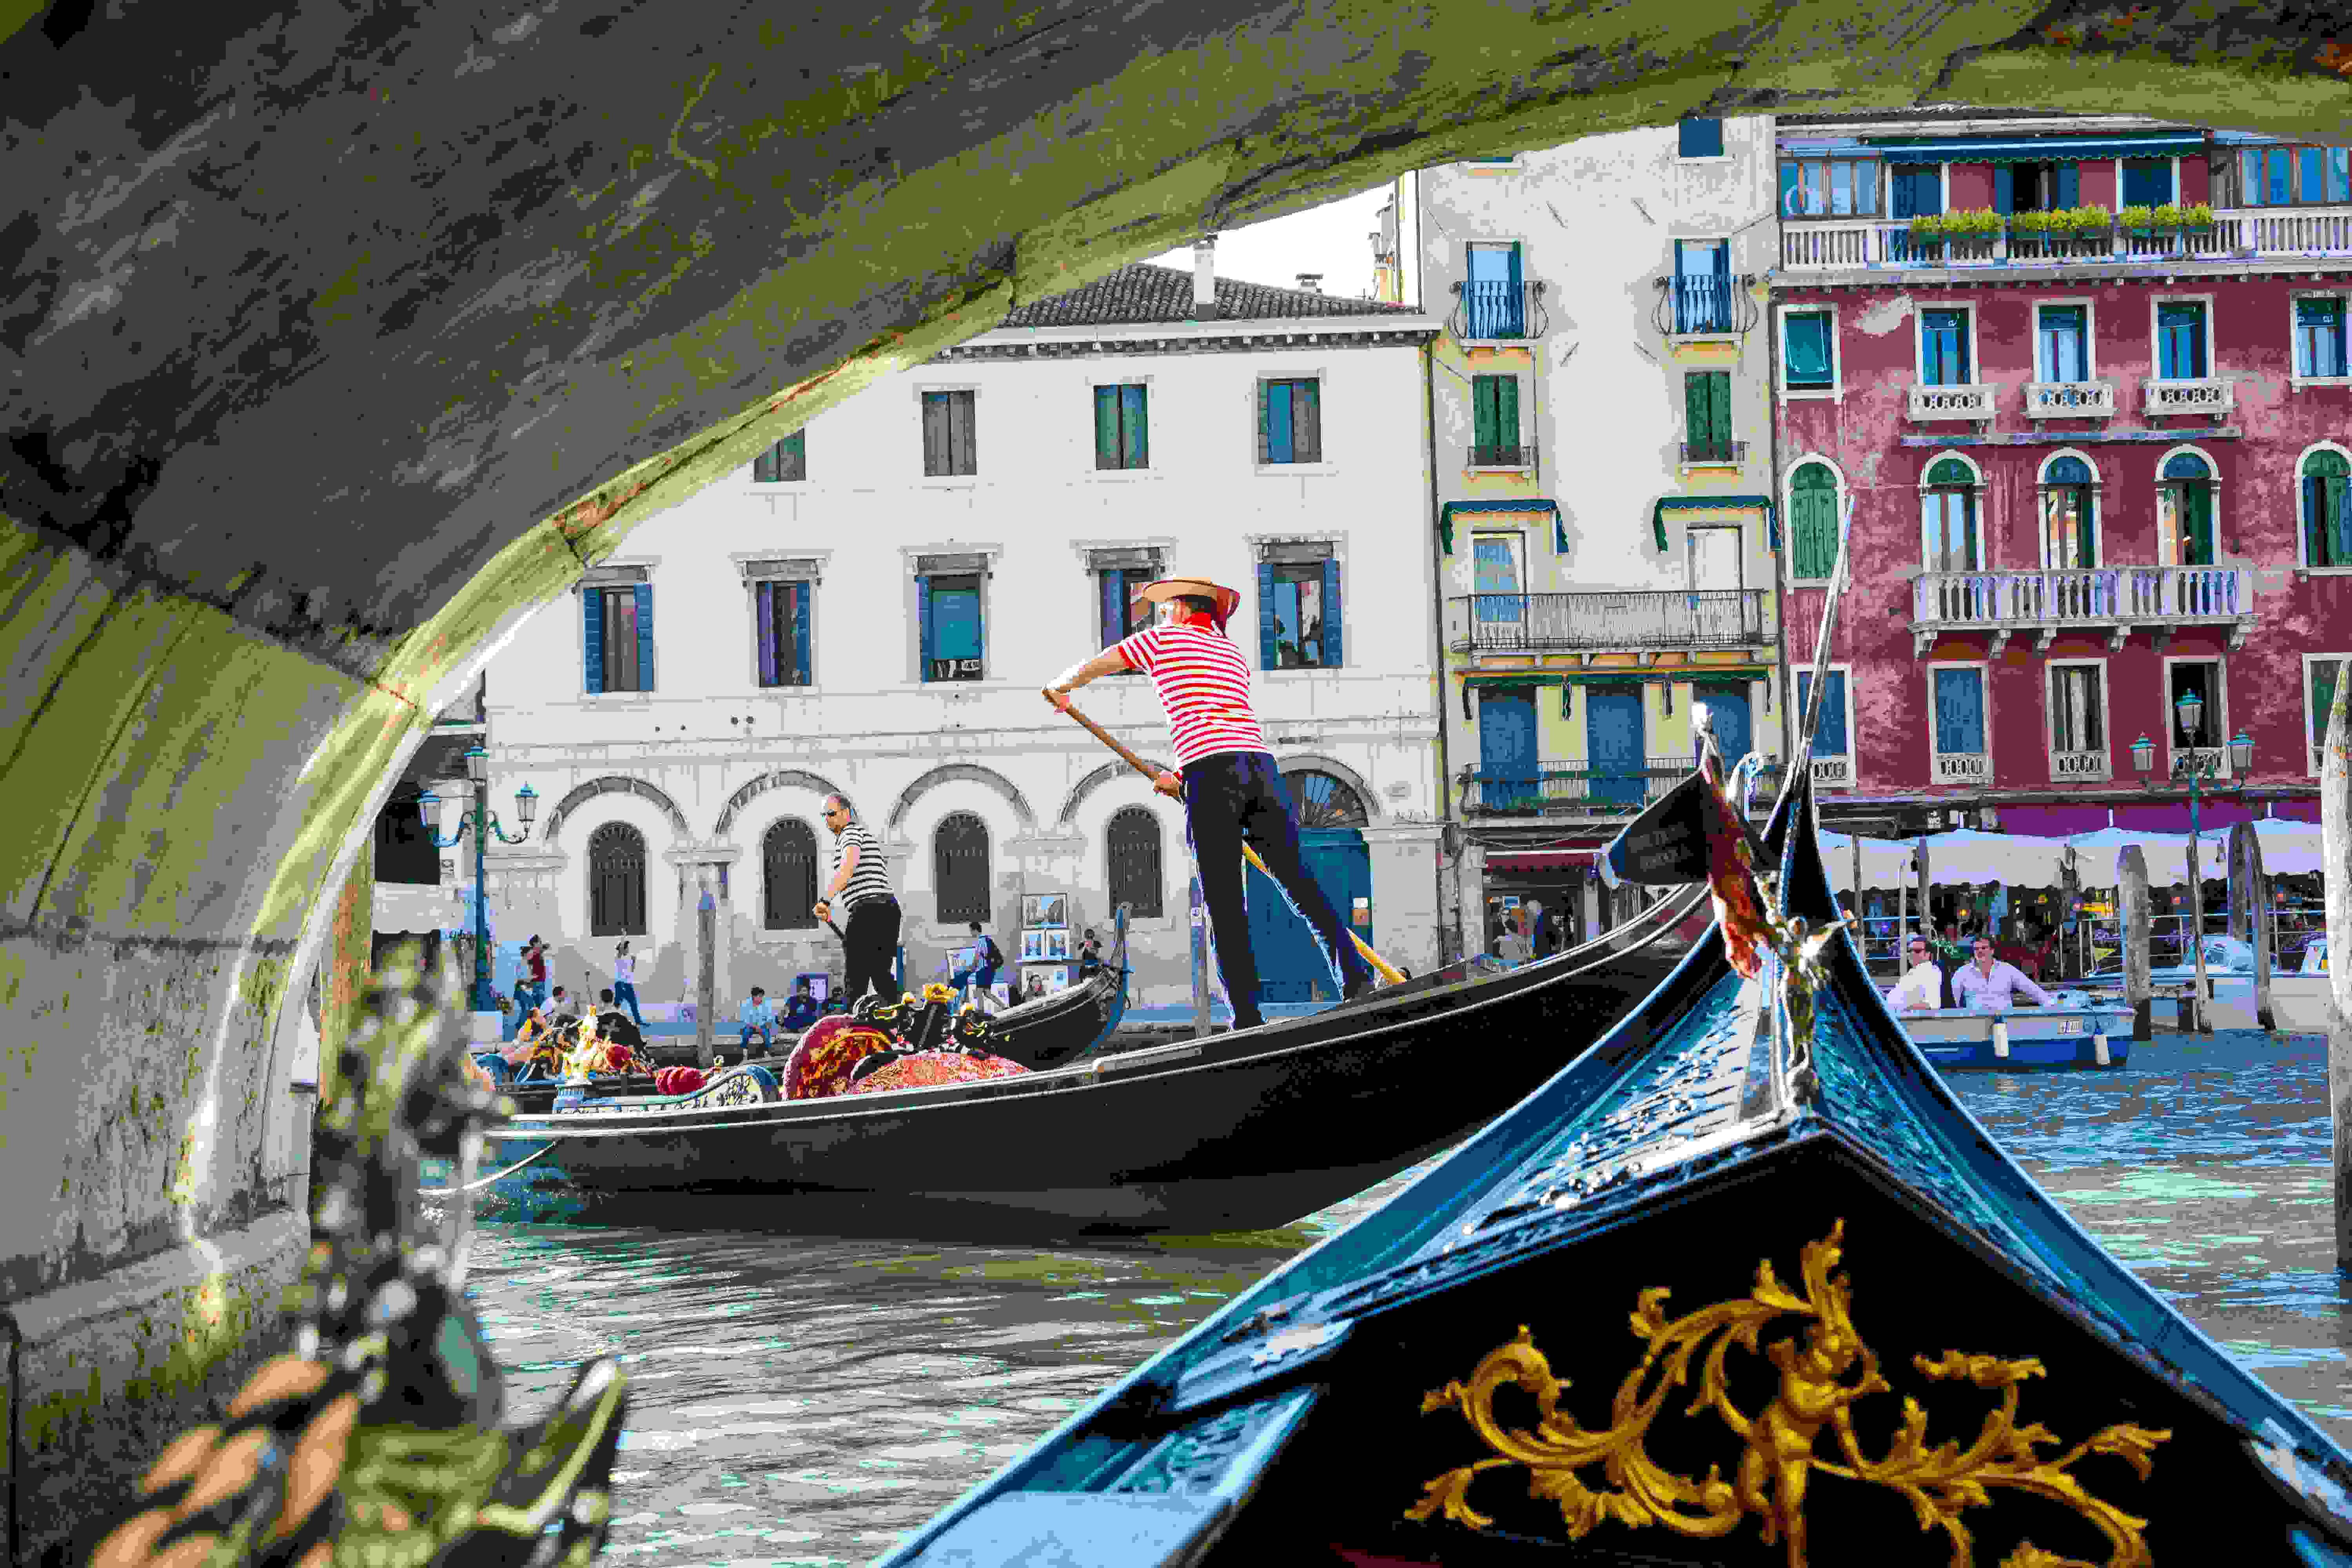 Andare in gondola a Venezia | Hotel Excelsior Venice Lido Resort, hotel 5 stelle sul Lido di Venezia